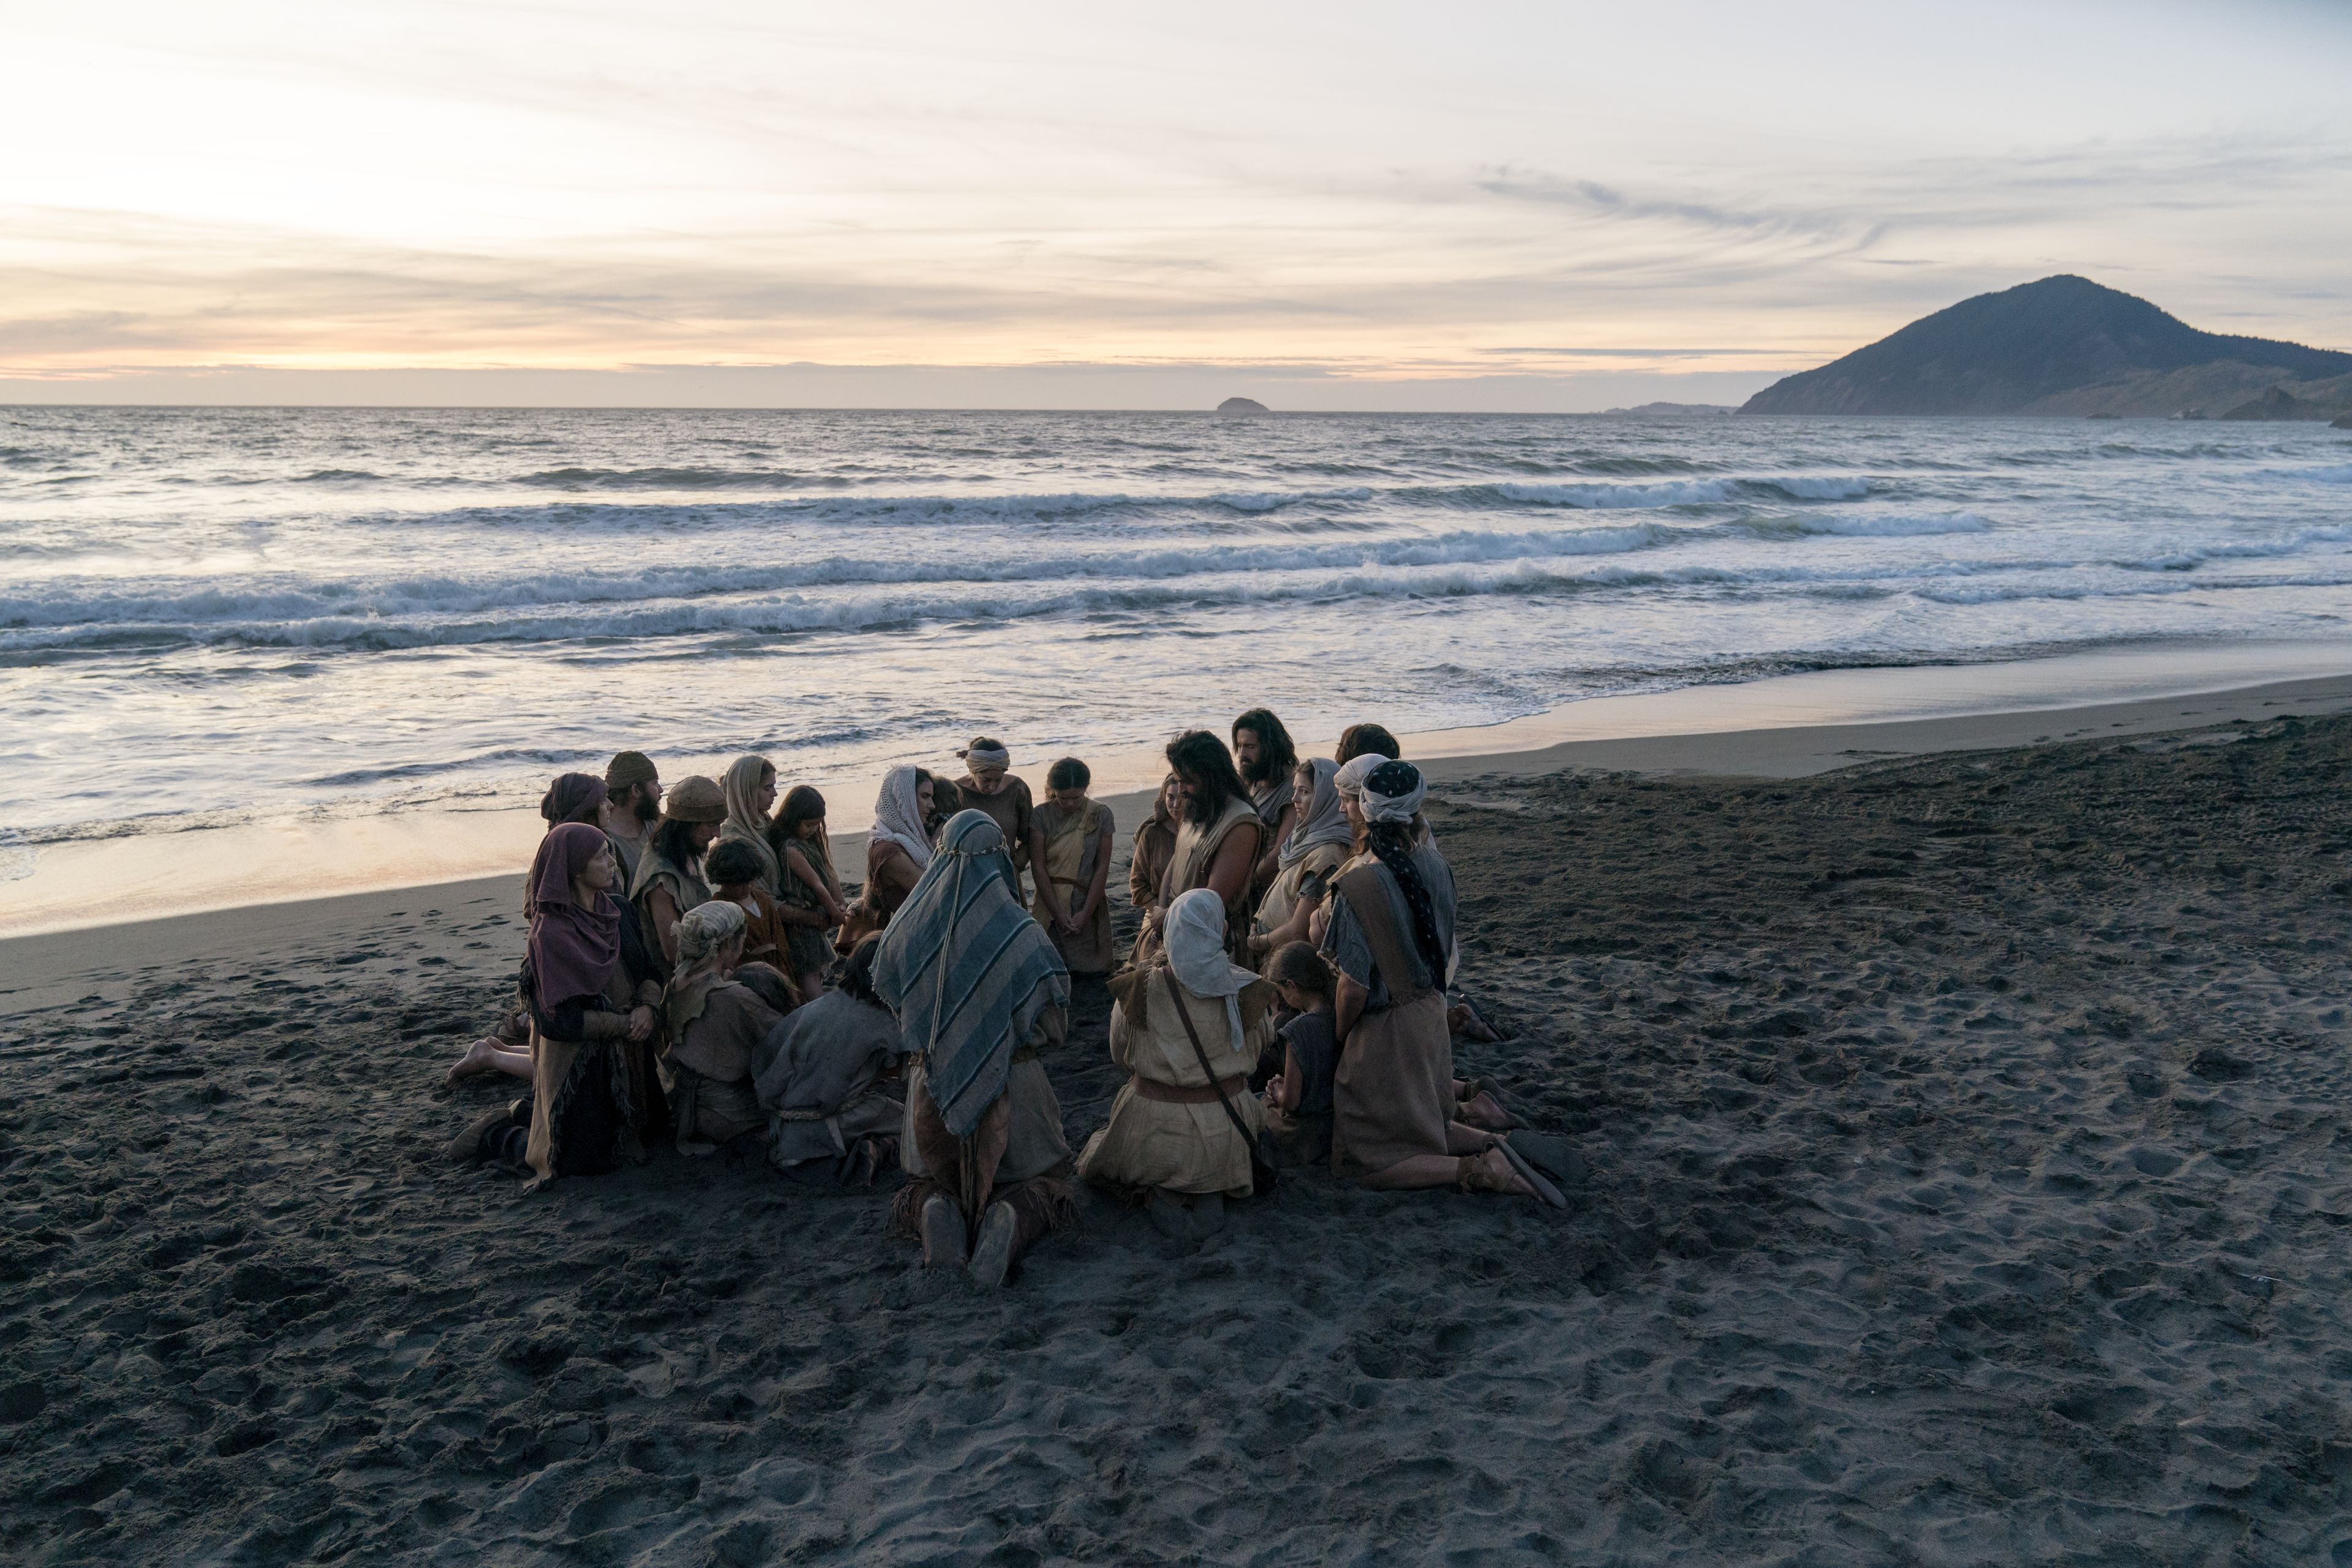 Lehi's family prays on the beach.